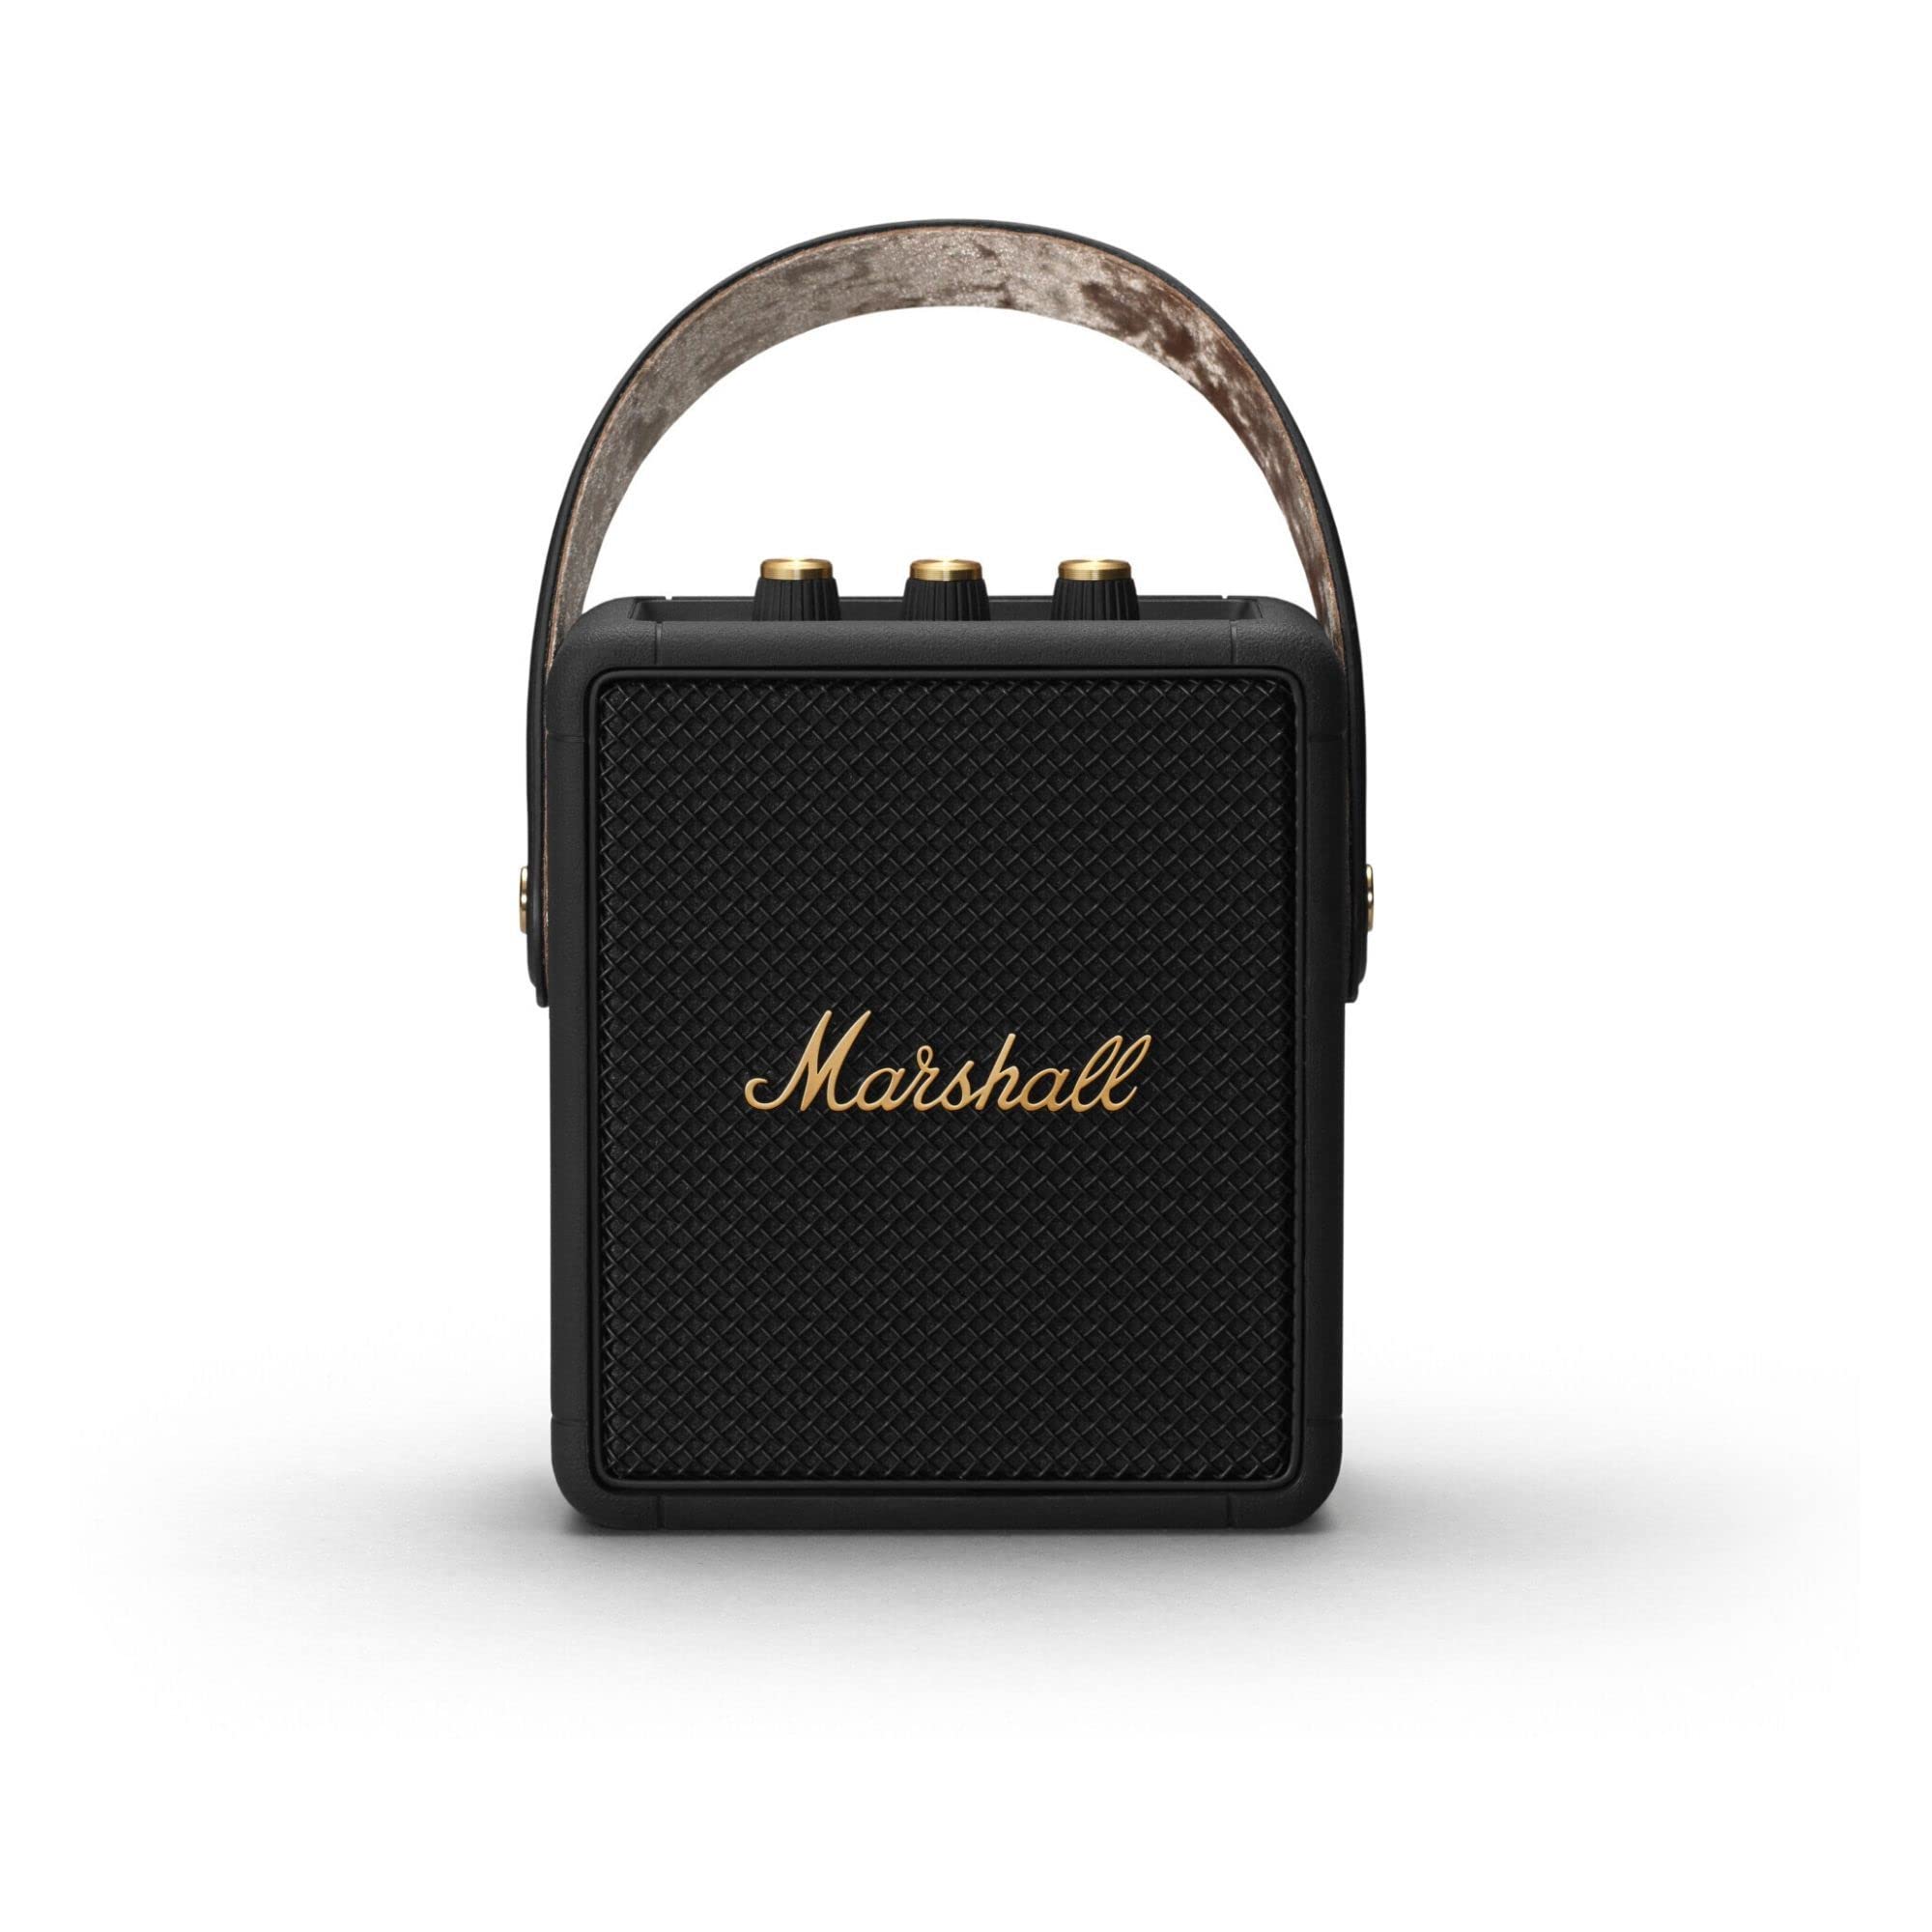 Marshall Stockwell II Portable Bluetooth Speaker - Blac...